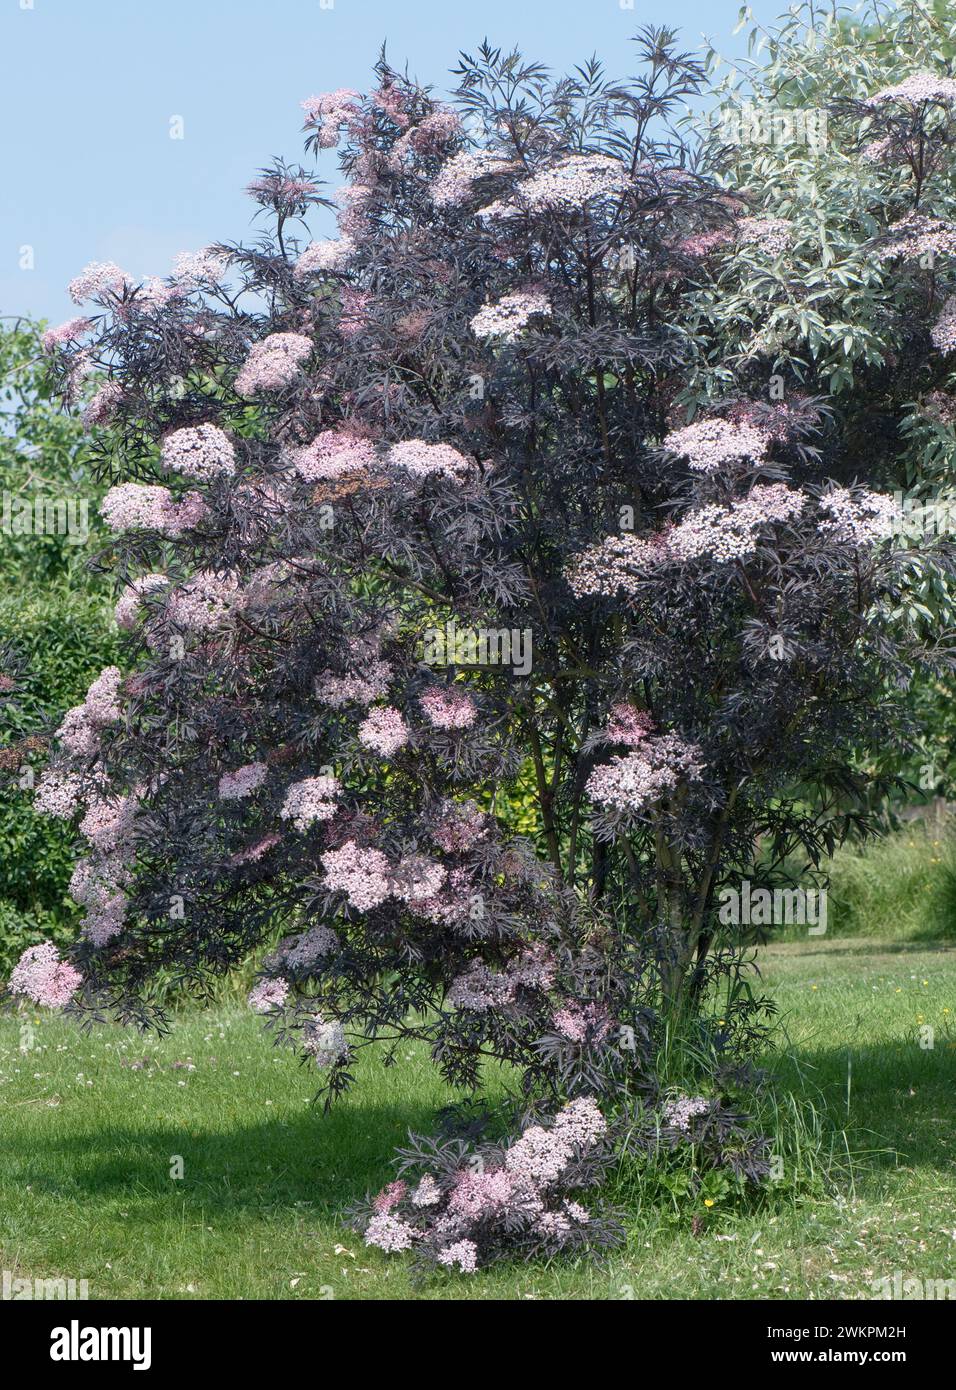 Sambucus nigra 'Black Lace', un petit arbre à feuilles caduques avec des feuilles violettes foncées et des parapluies blanches à roses dans un jardin, Berkshire, juin Banque D'Images